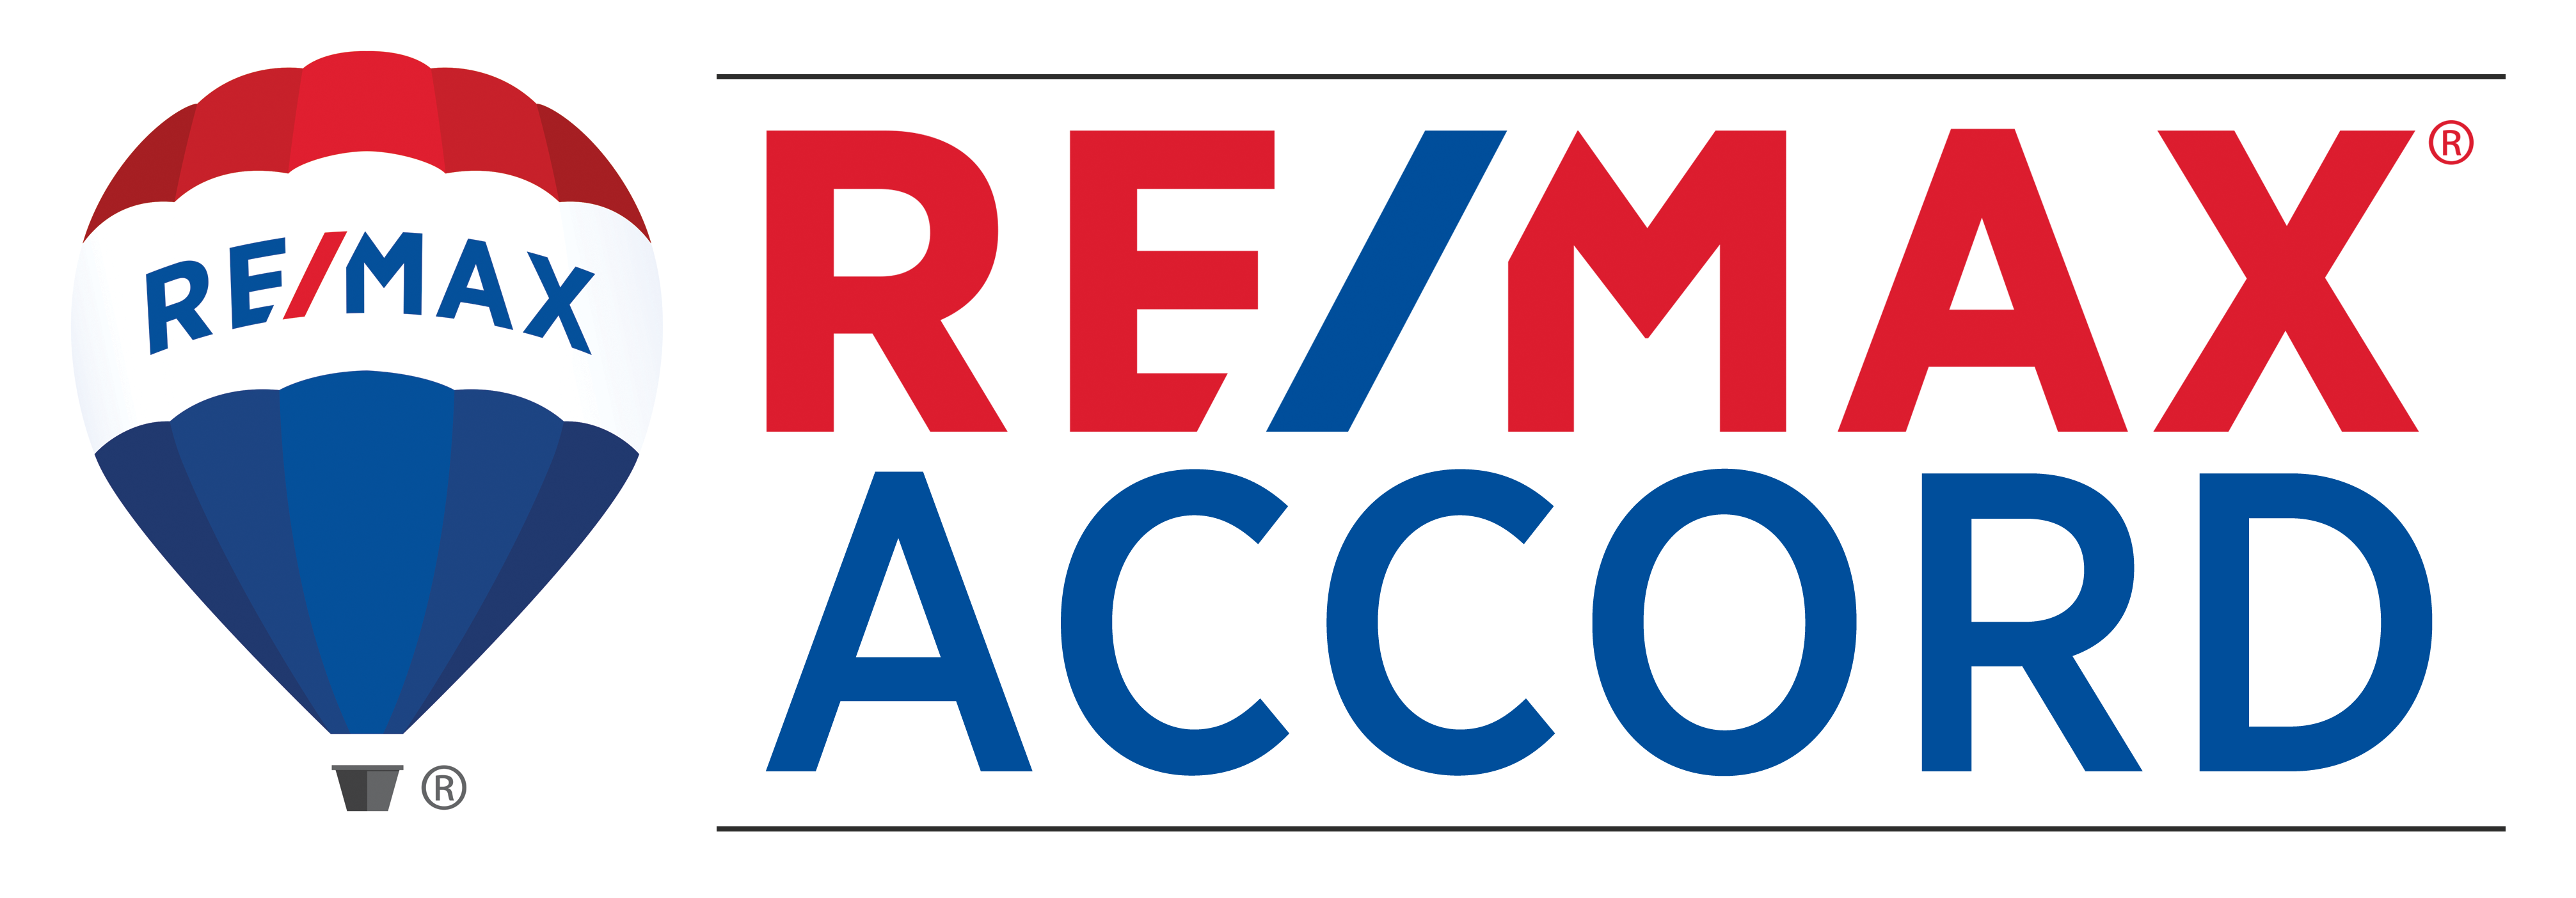 Remax Accord | License# 01989947